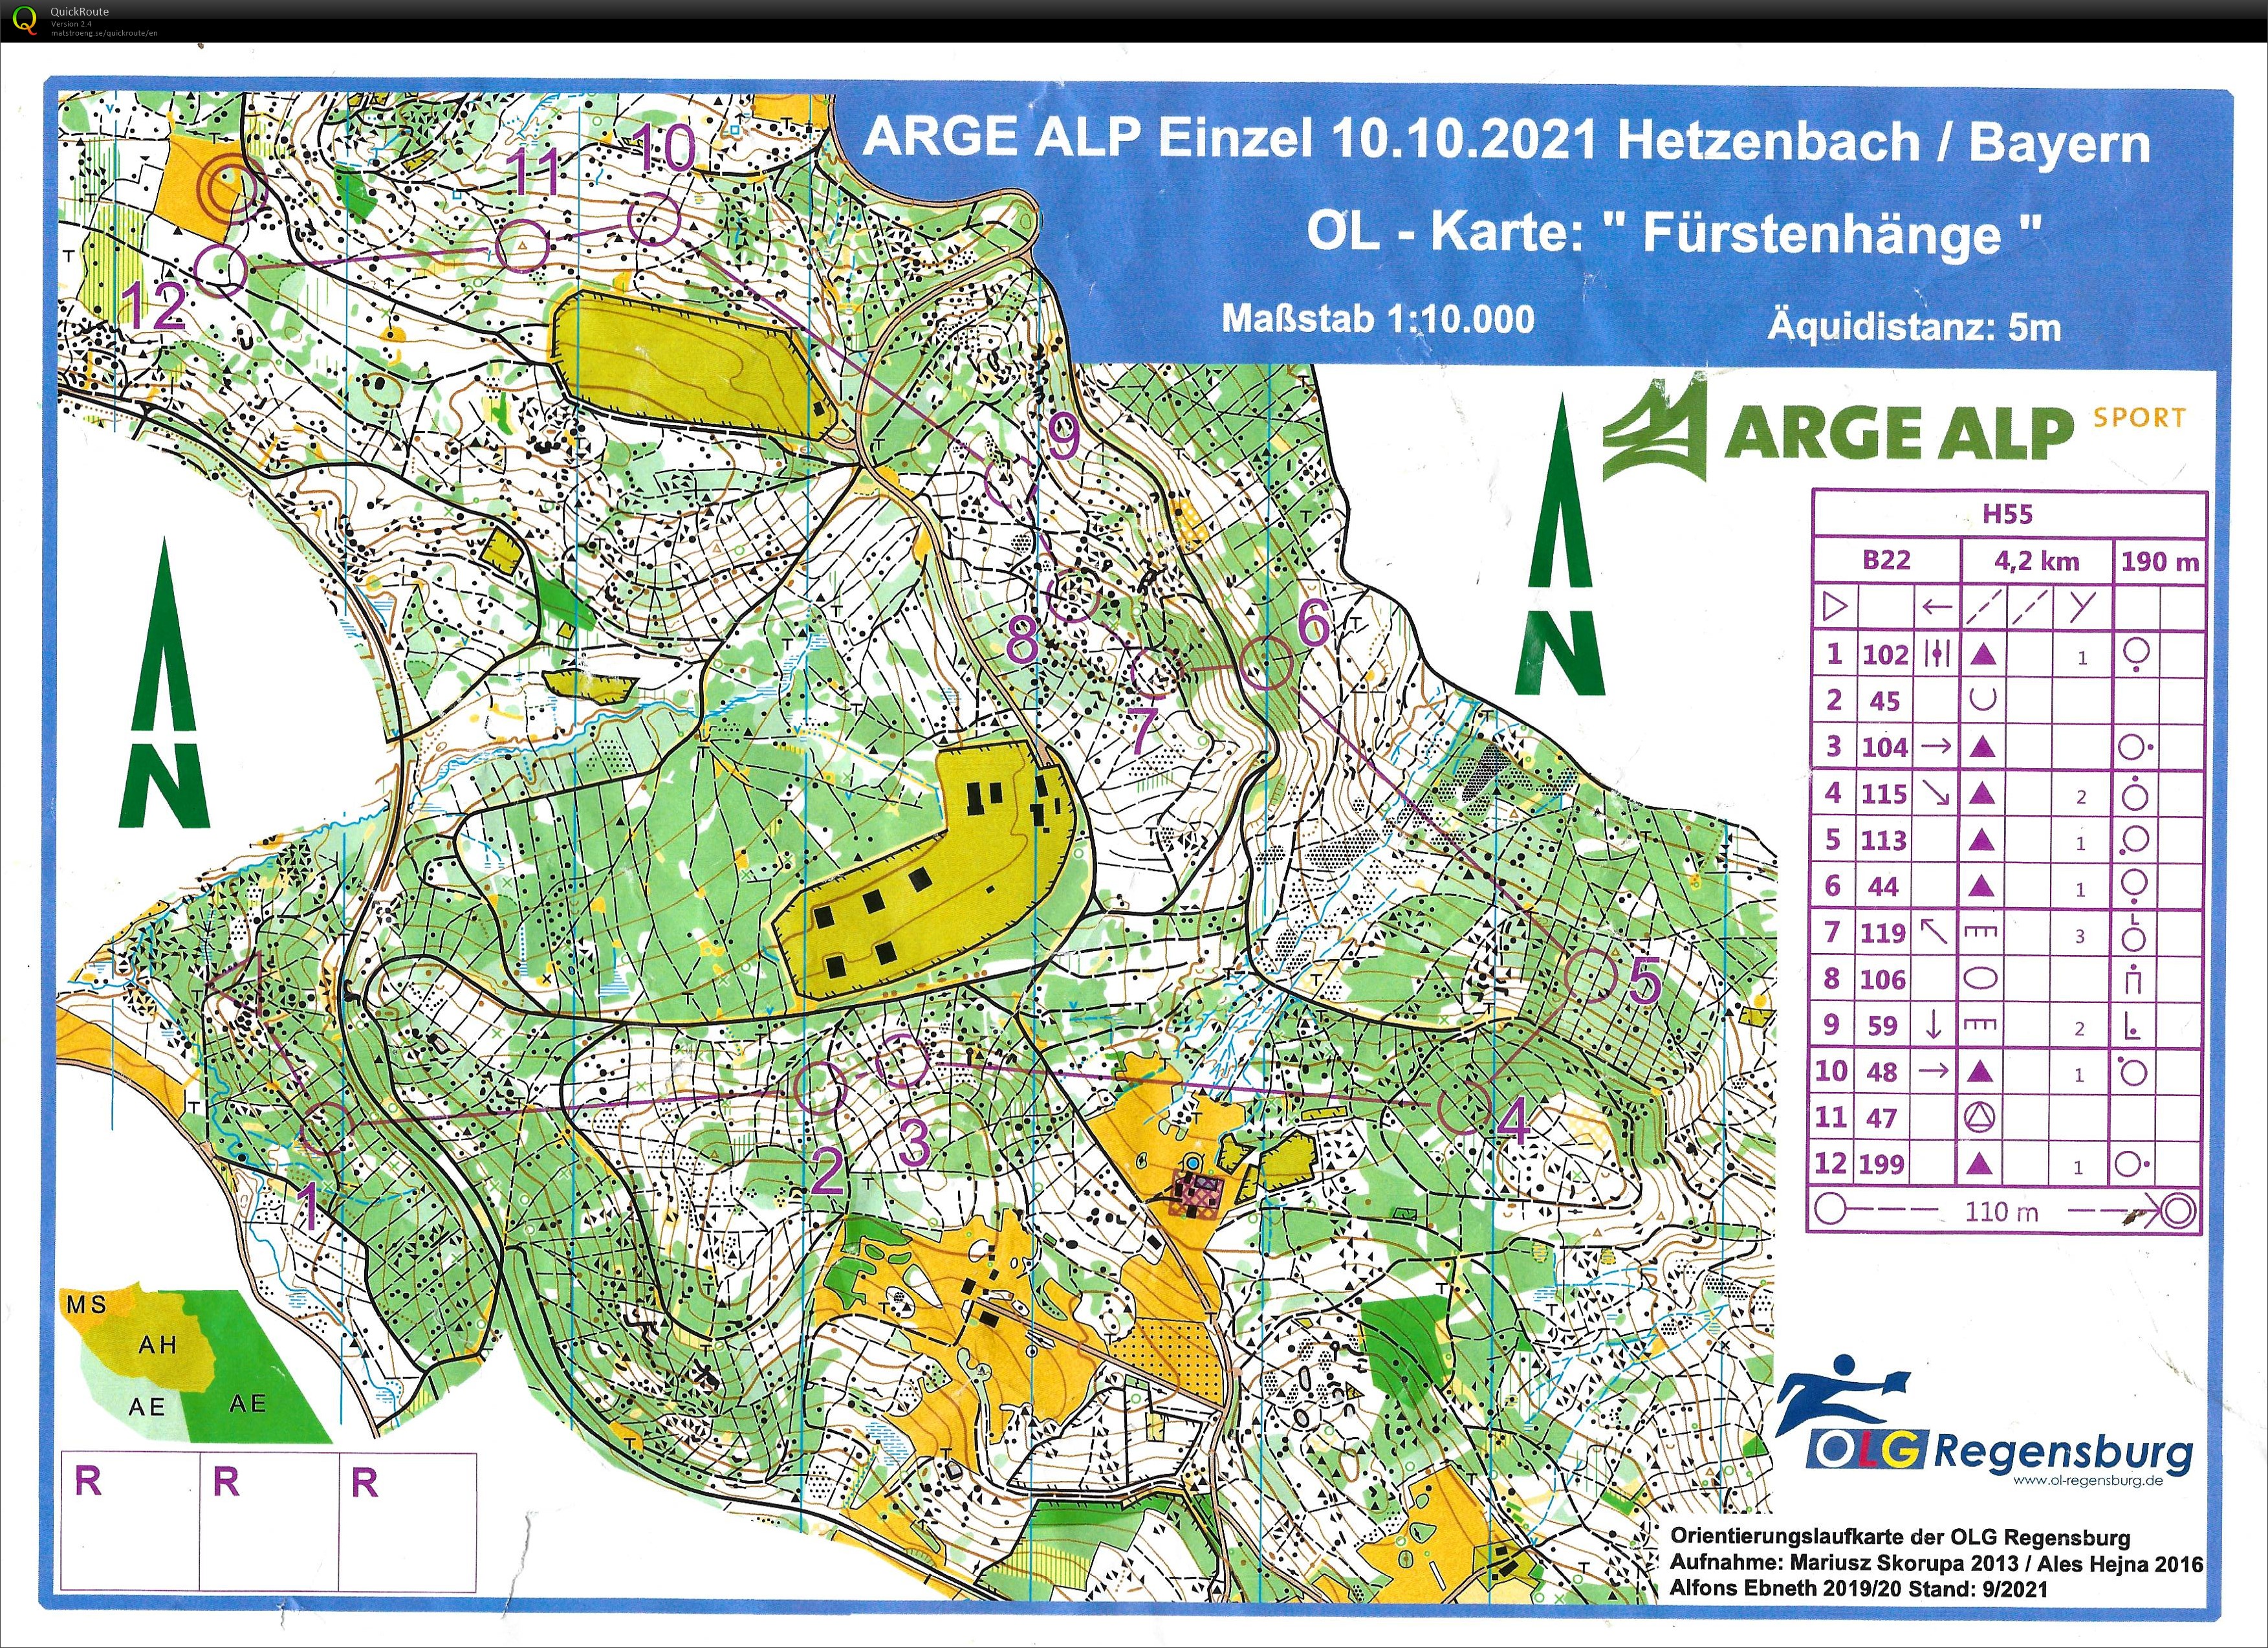 Arge Alp 2021 Regensburg Einzel (10.10.2021)